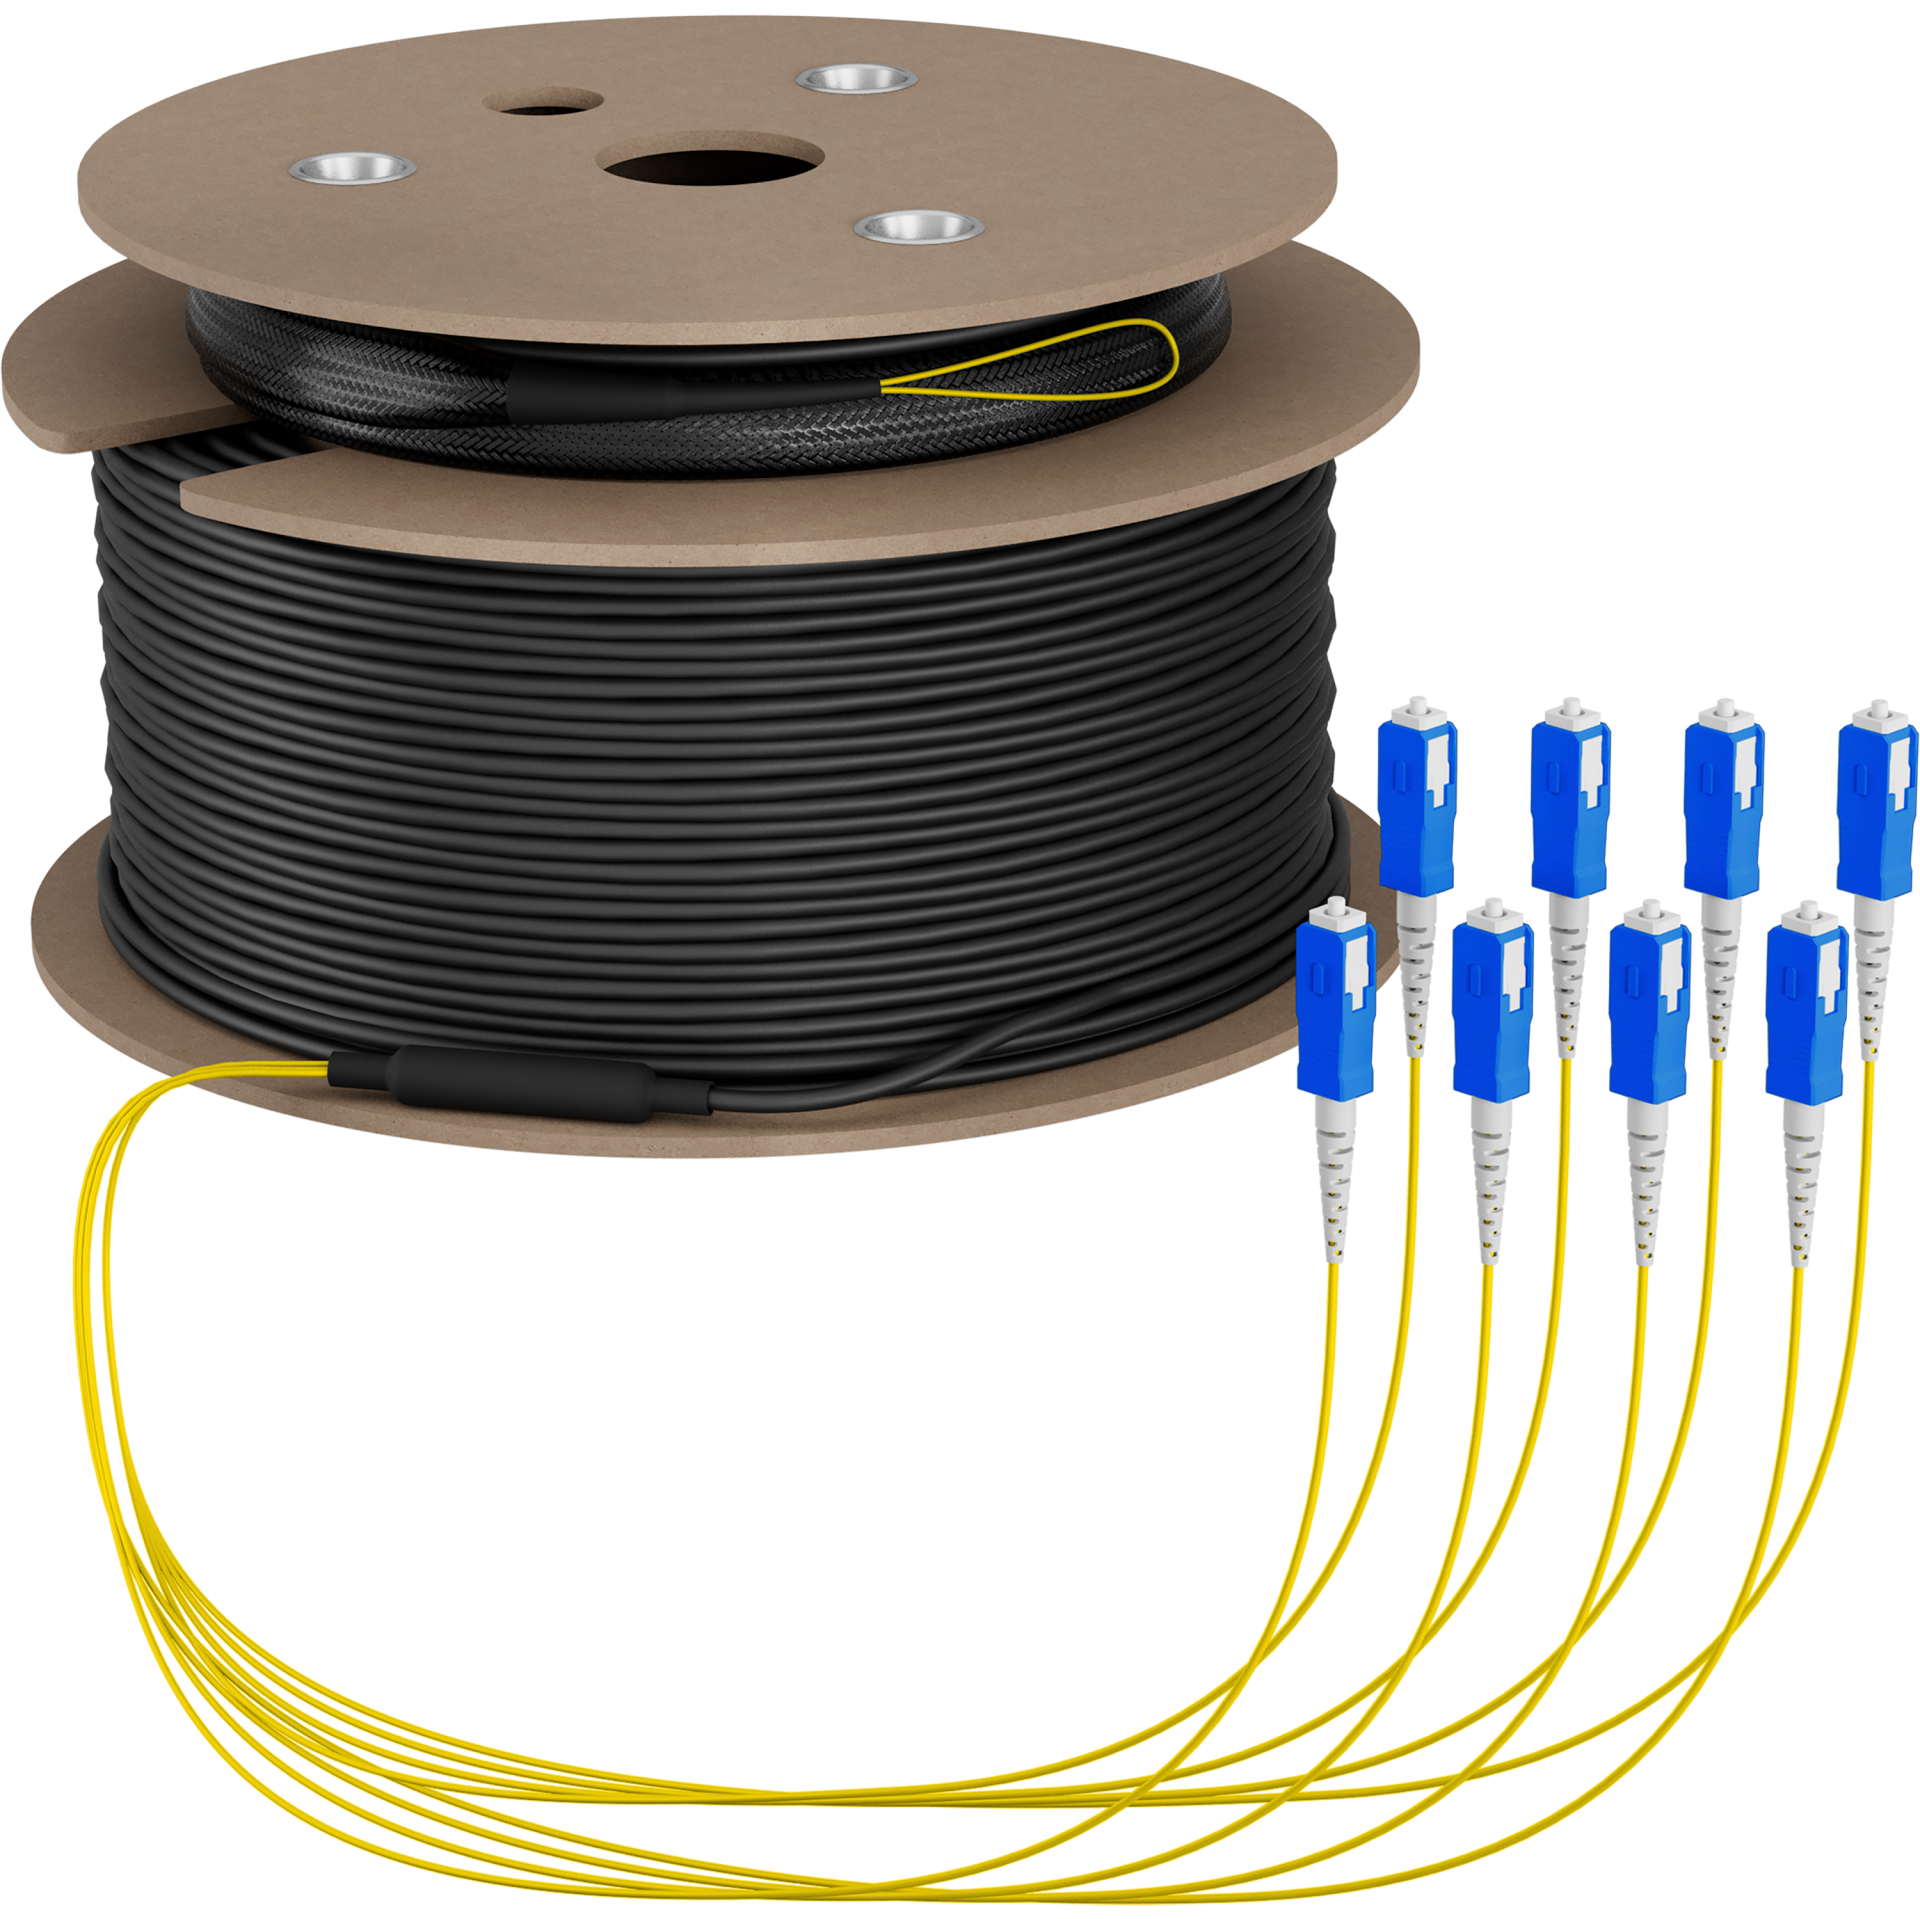 Trunk cable U-DQ(ZN)BH OS2 8E (1x8) SC-SC,90m Dca LSZH